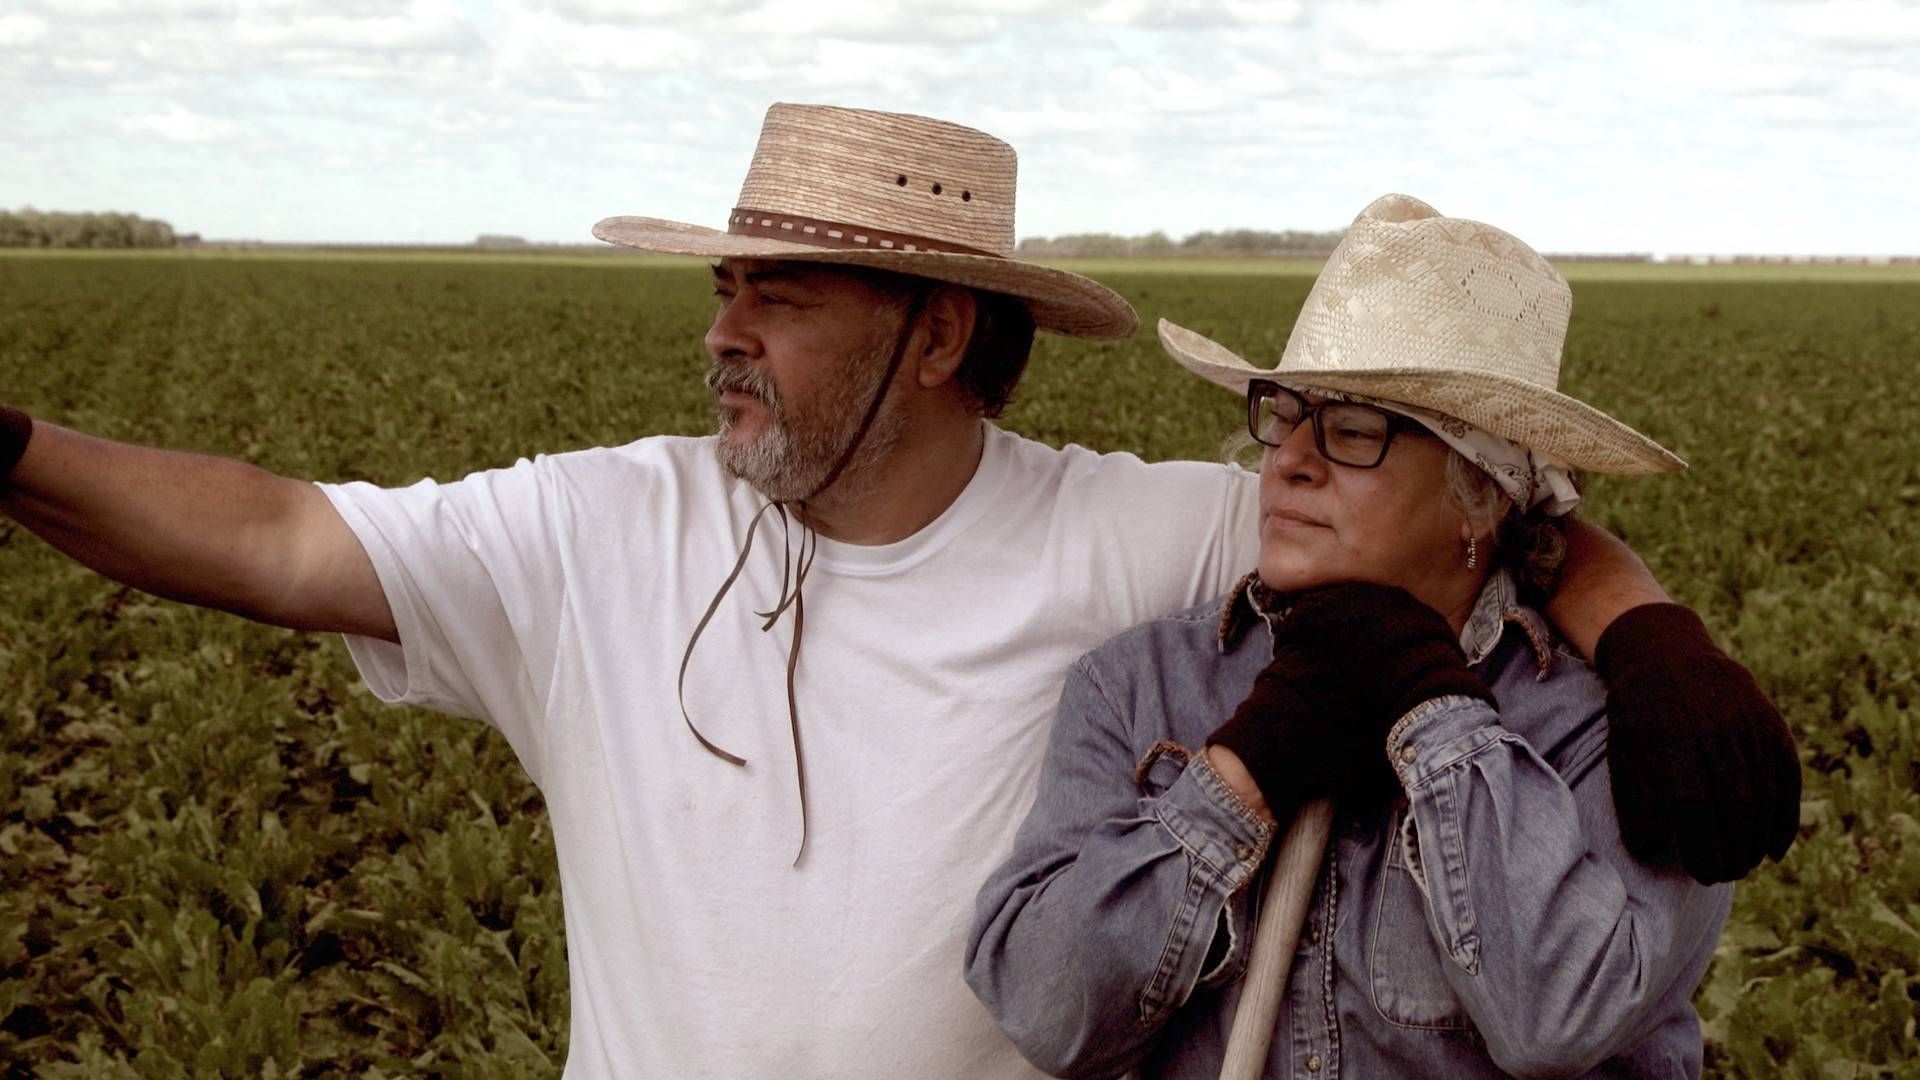 Two farmers standing in a field wearing cowboy hats